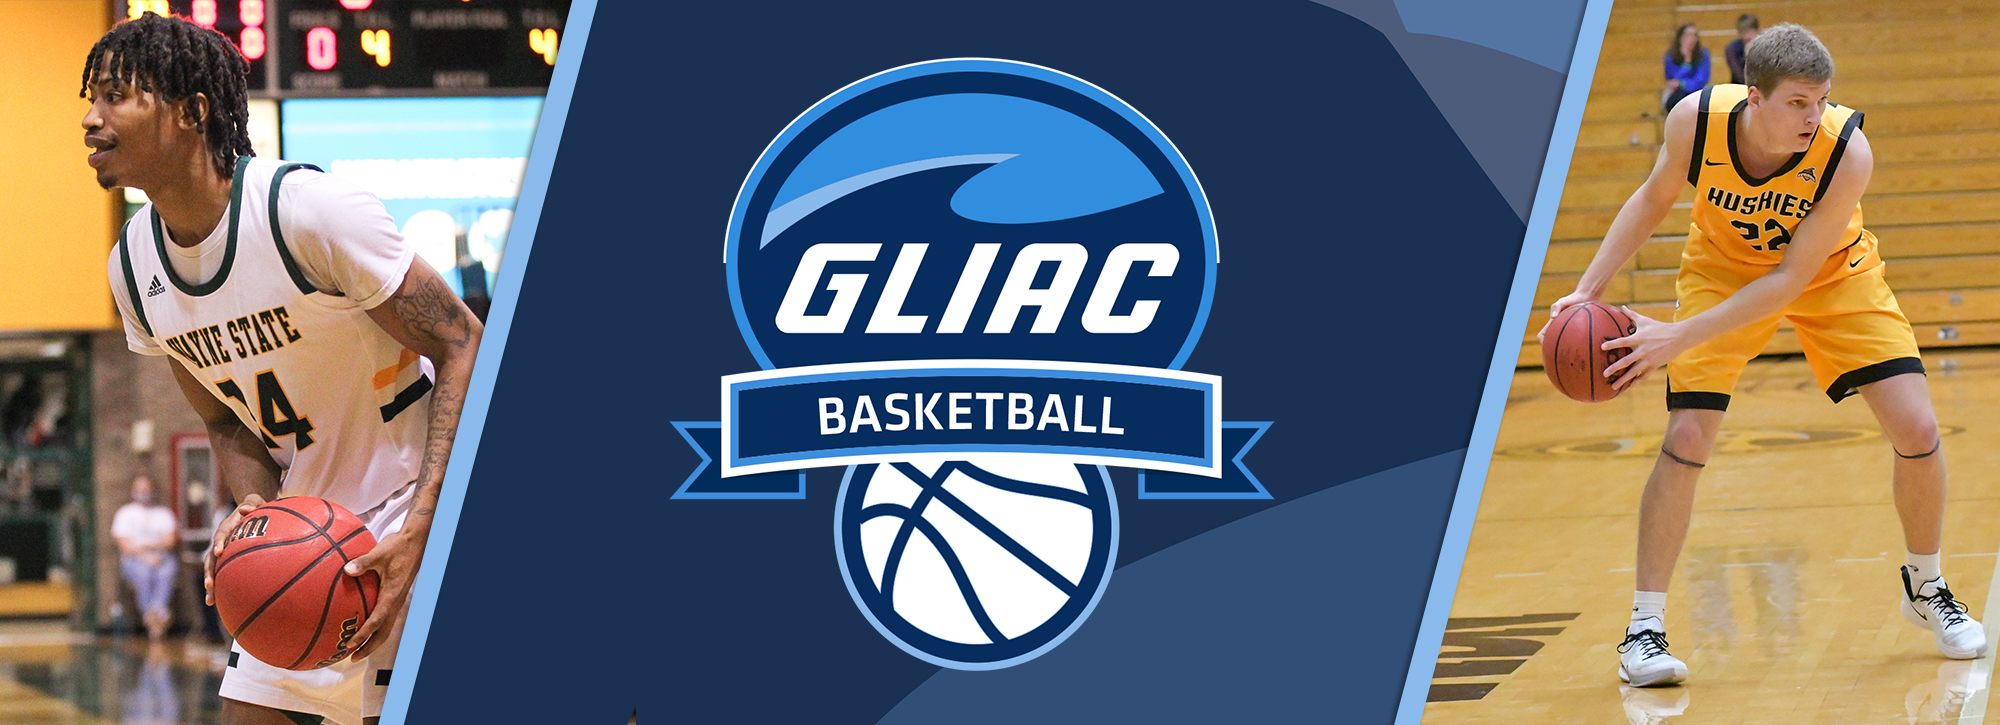 MTU's White, WSU's Owens-White Claim GLIAC Men's Basketball Weekly Honors